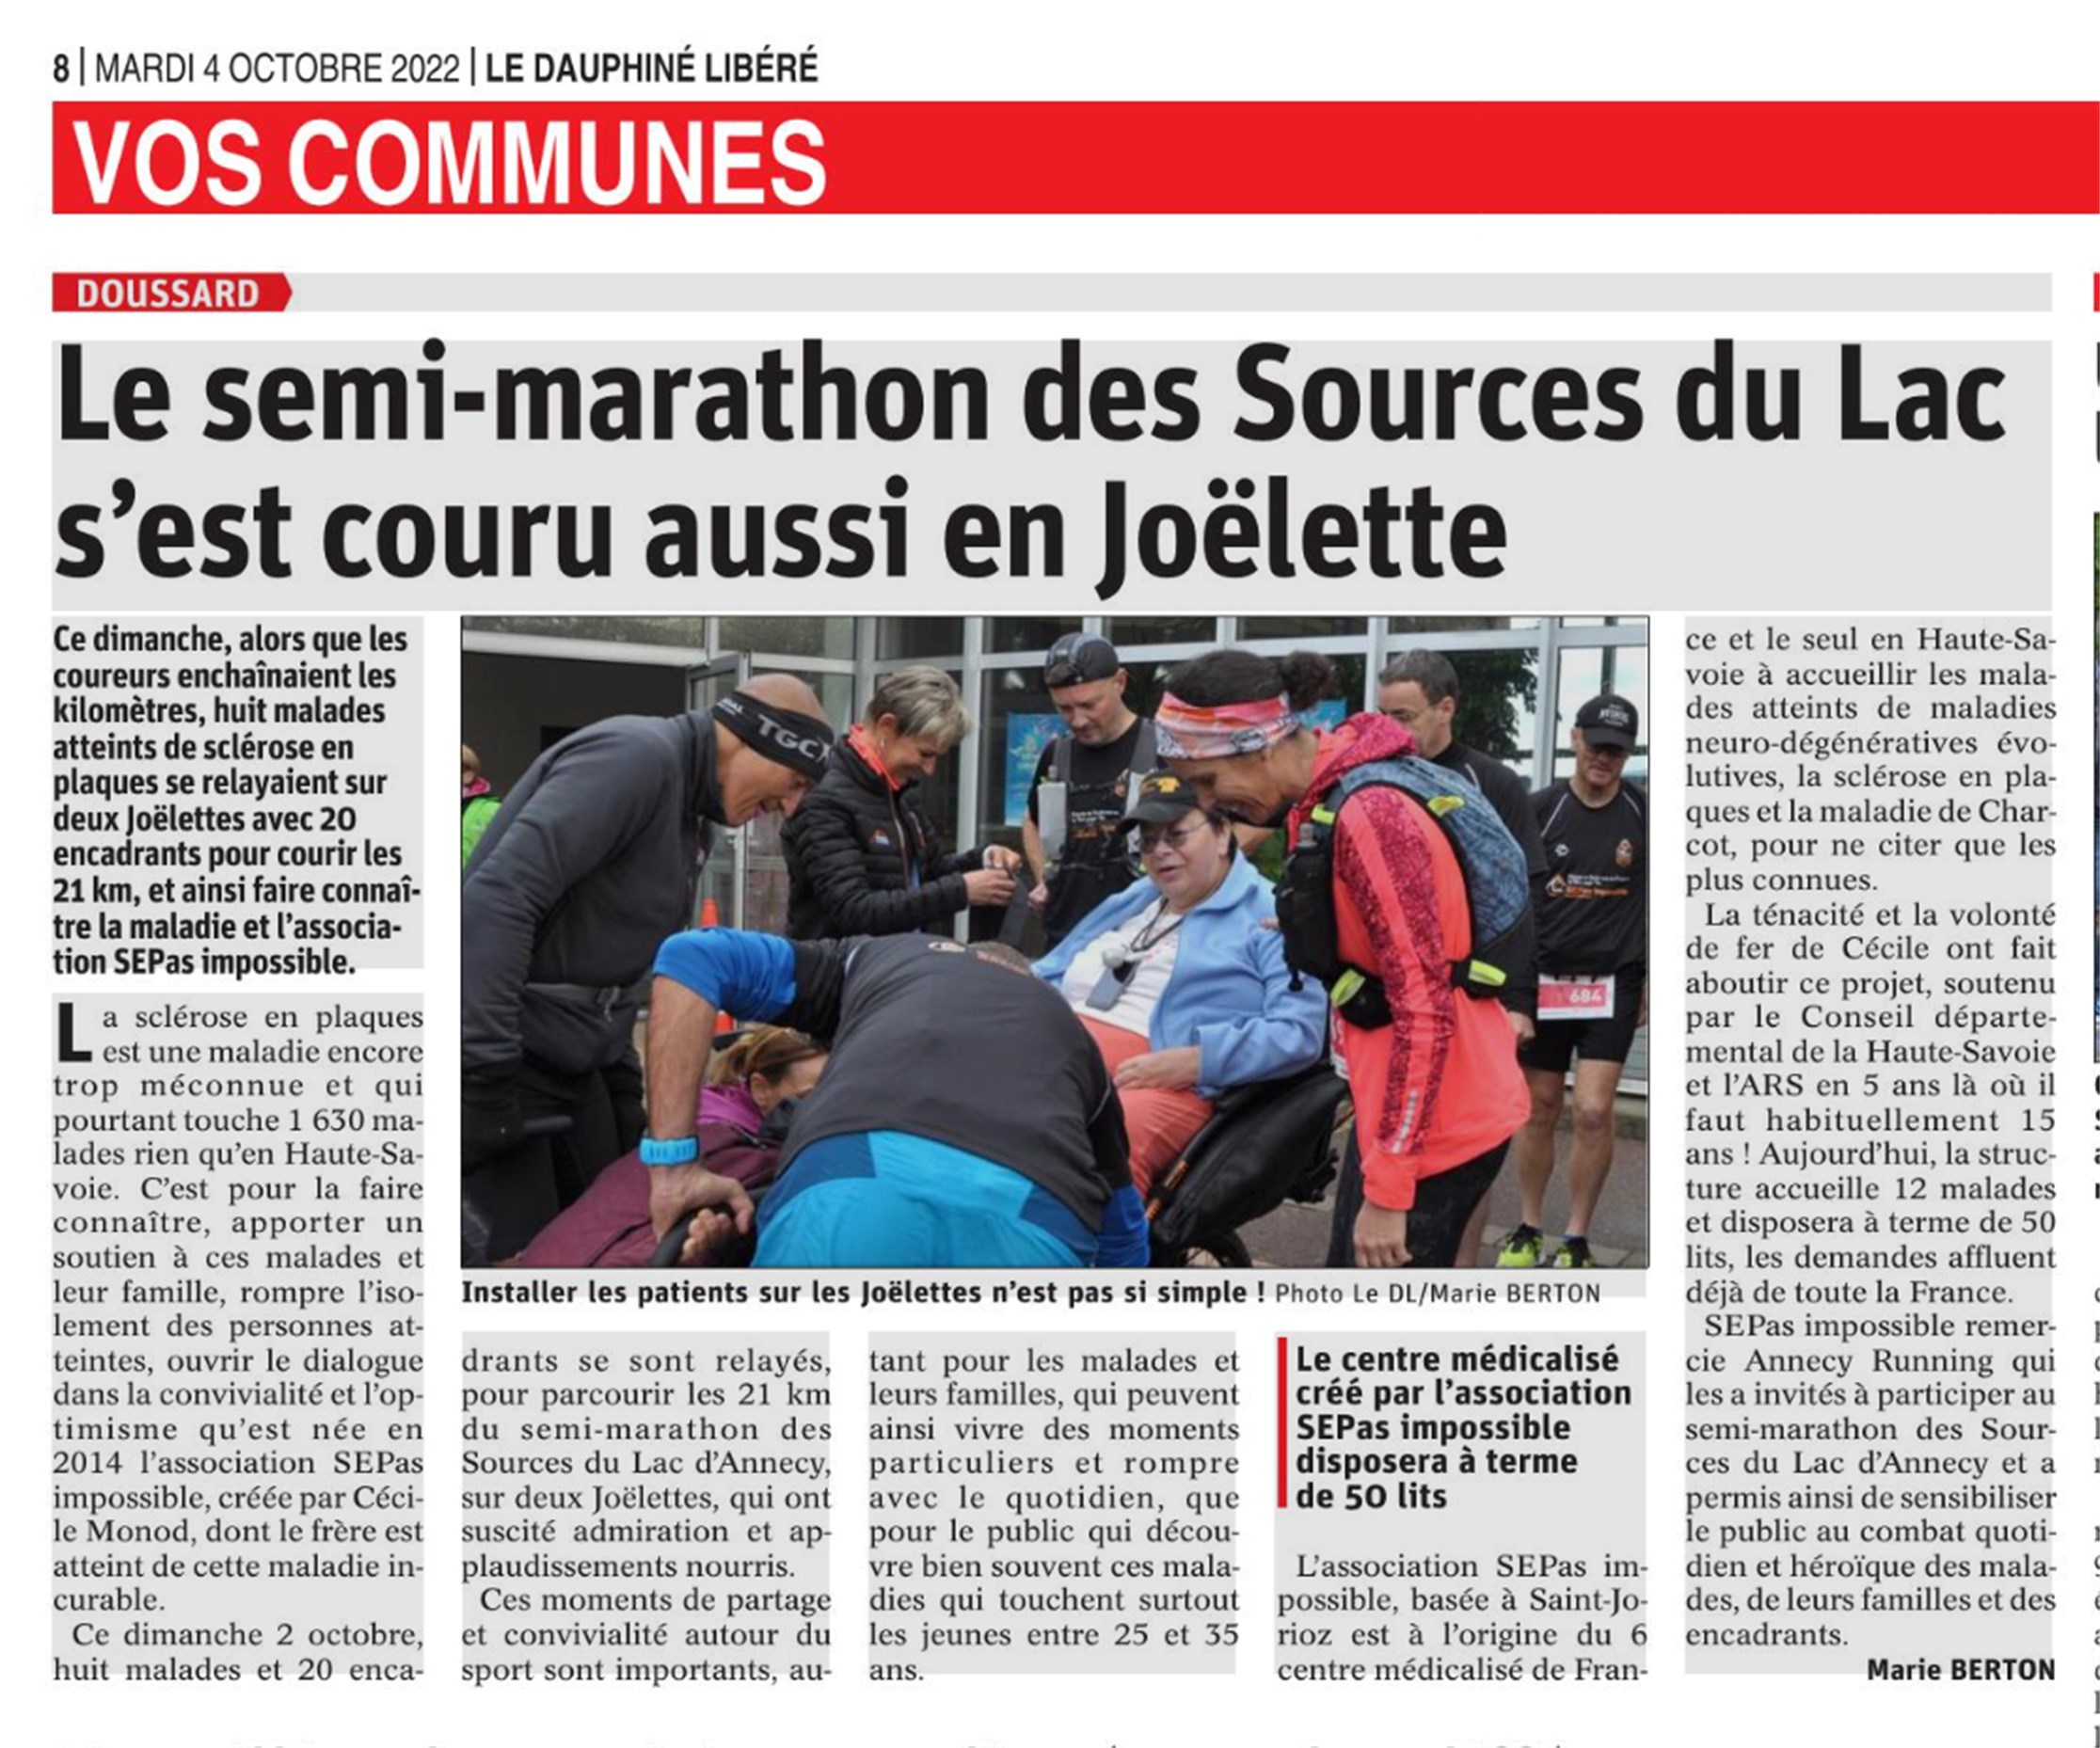 Dauphiné Libéré :  Le Semi-marathon des Sources du Lac en Joëlette